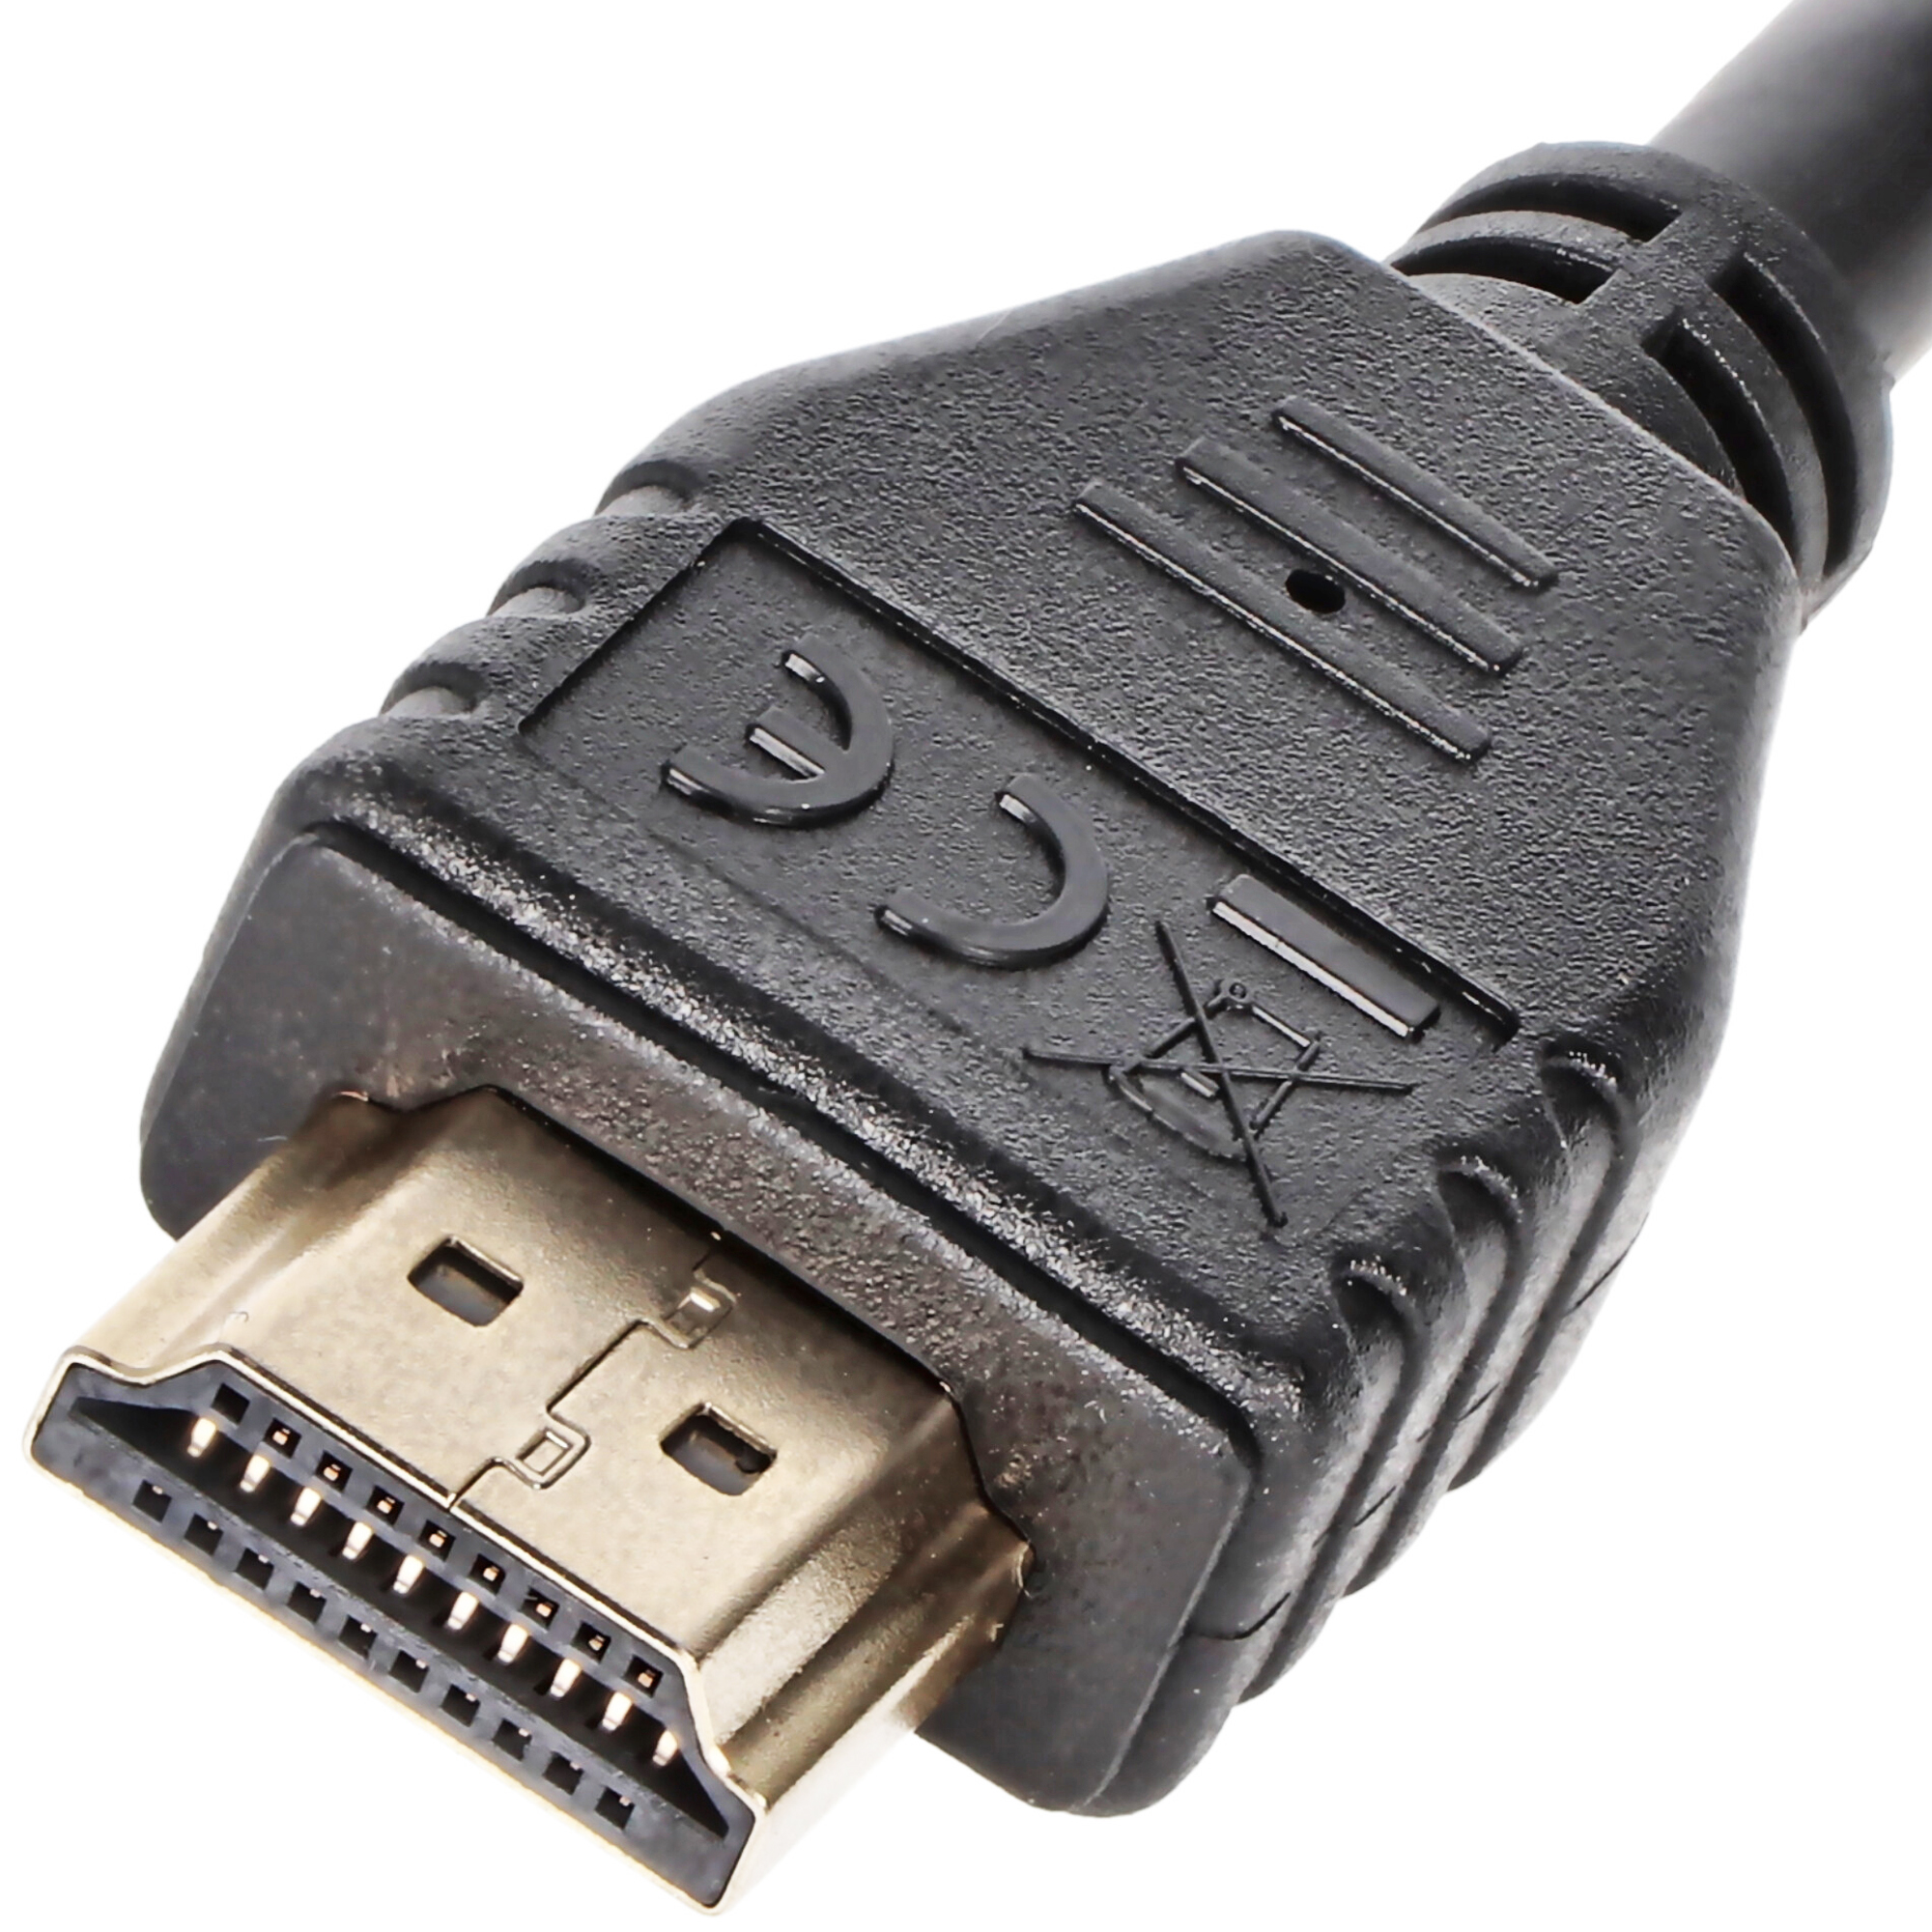 8K Ultra High-Speed HDMI™ Kabel mit Ethernet, zertifiziert Serie 2.1 für 4K und 8K